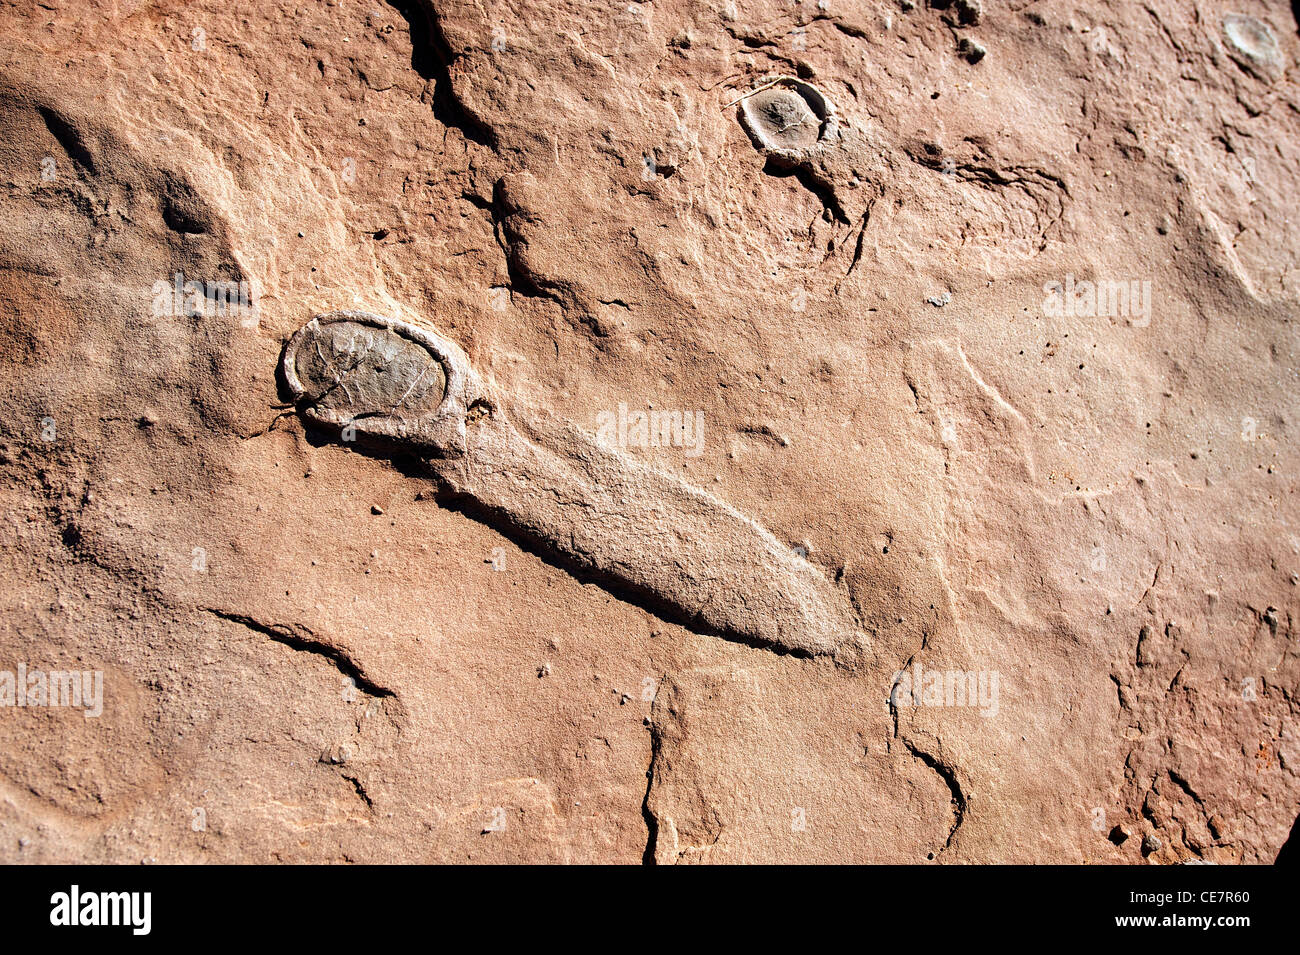 Oeufs de dinosaures fossilisés. L'oeuf dans l'avant-plan et s'enduit avant de la fossilisation, près de Tuba City, AZ, États-Unis Banque D'Images